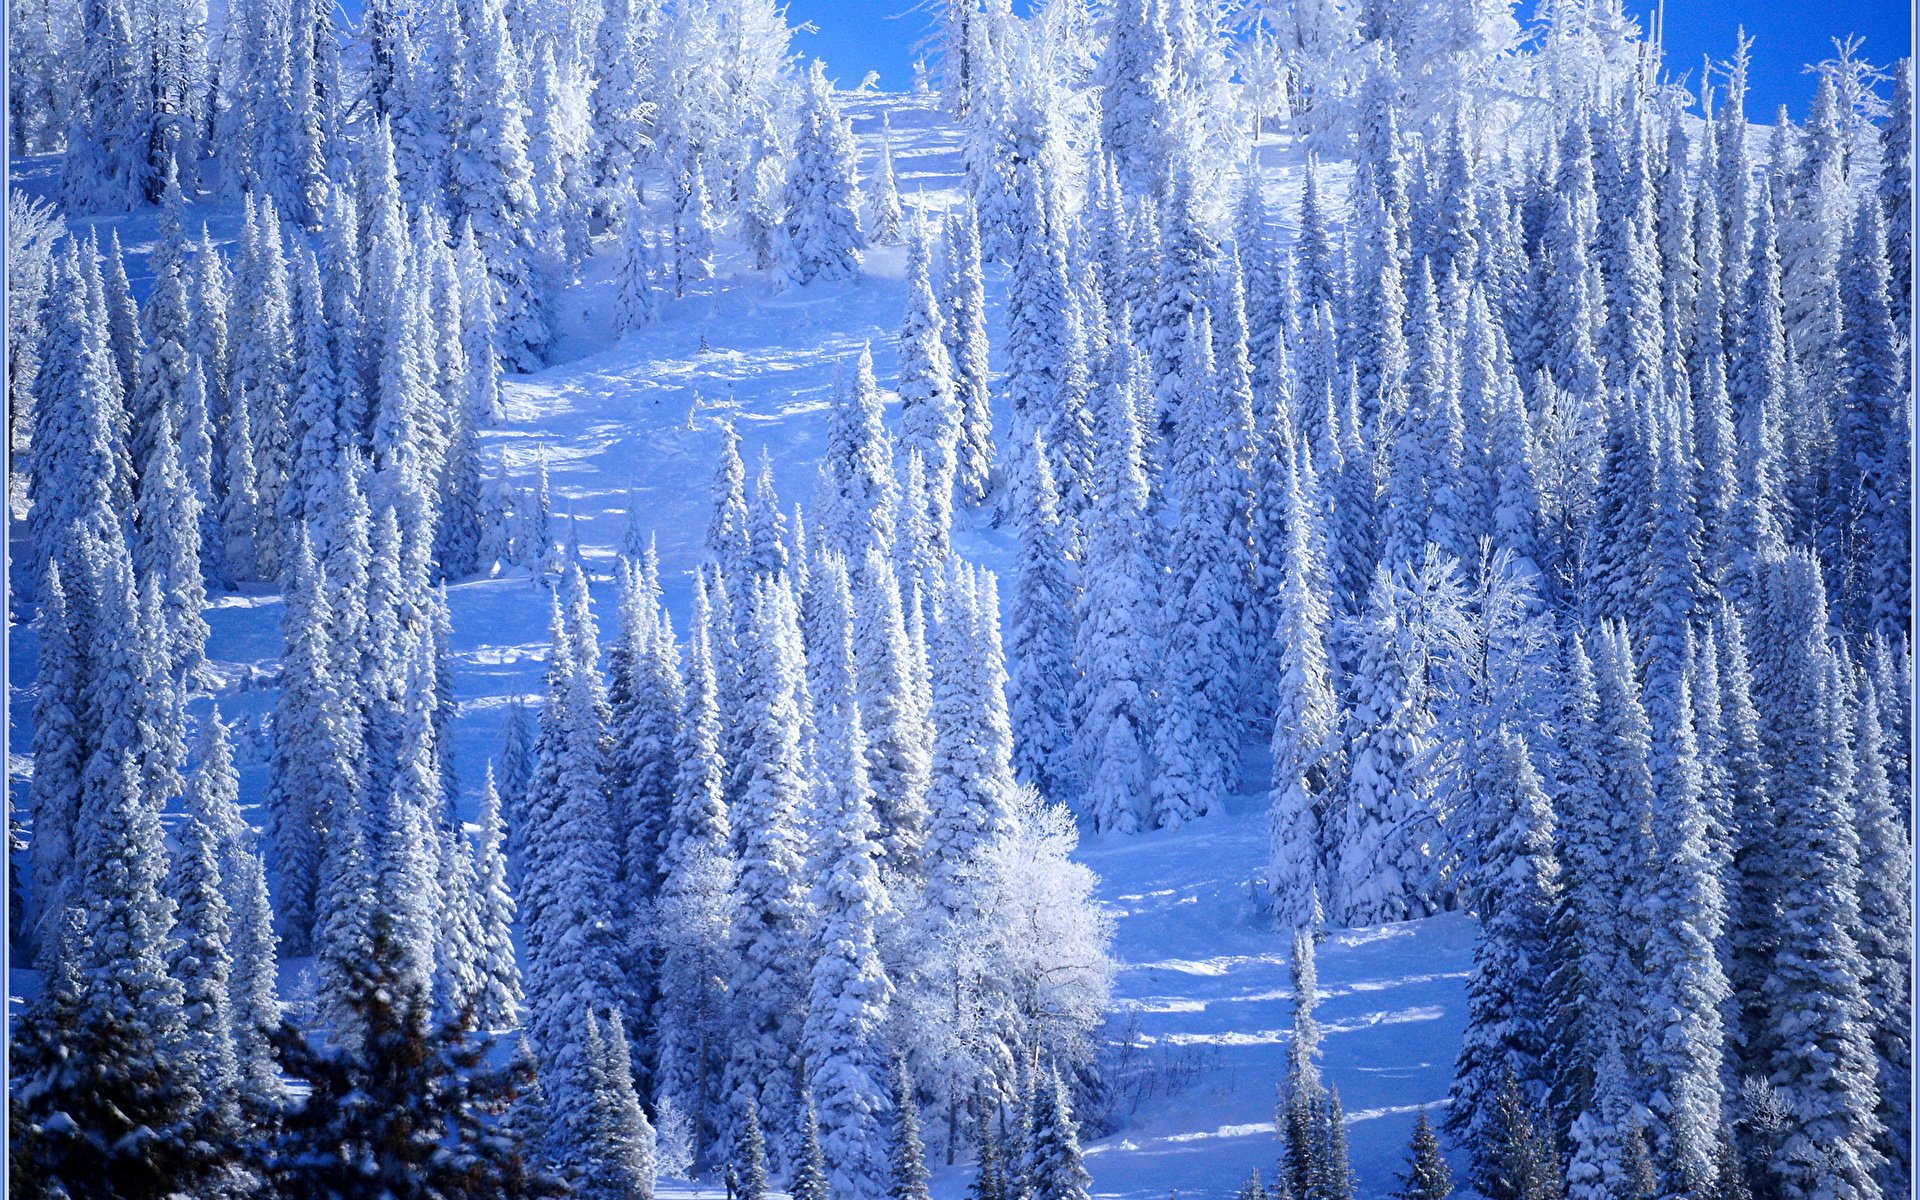 Красивые снежные леса